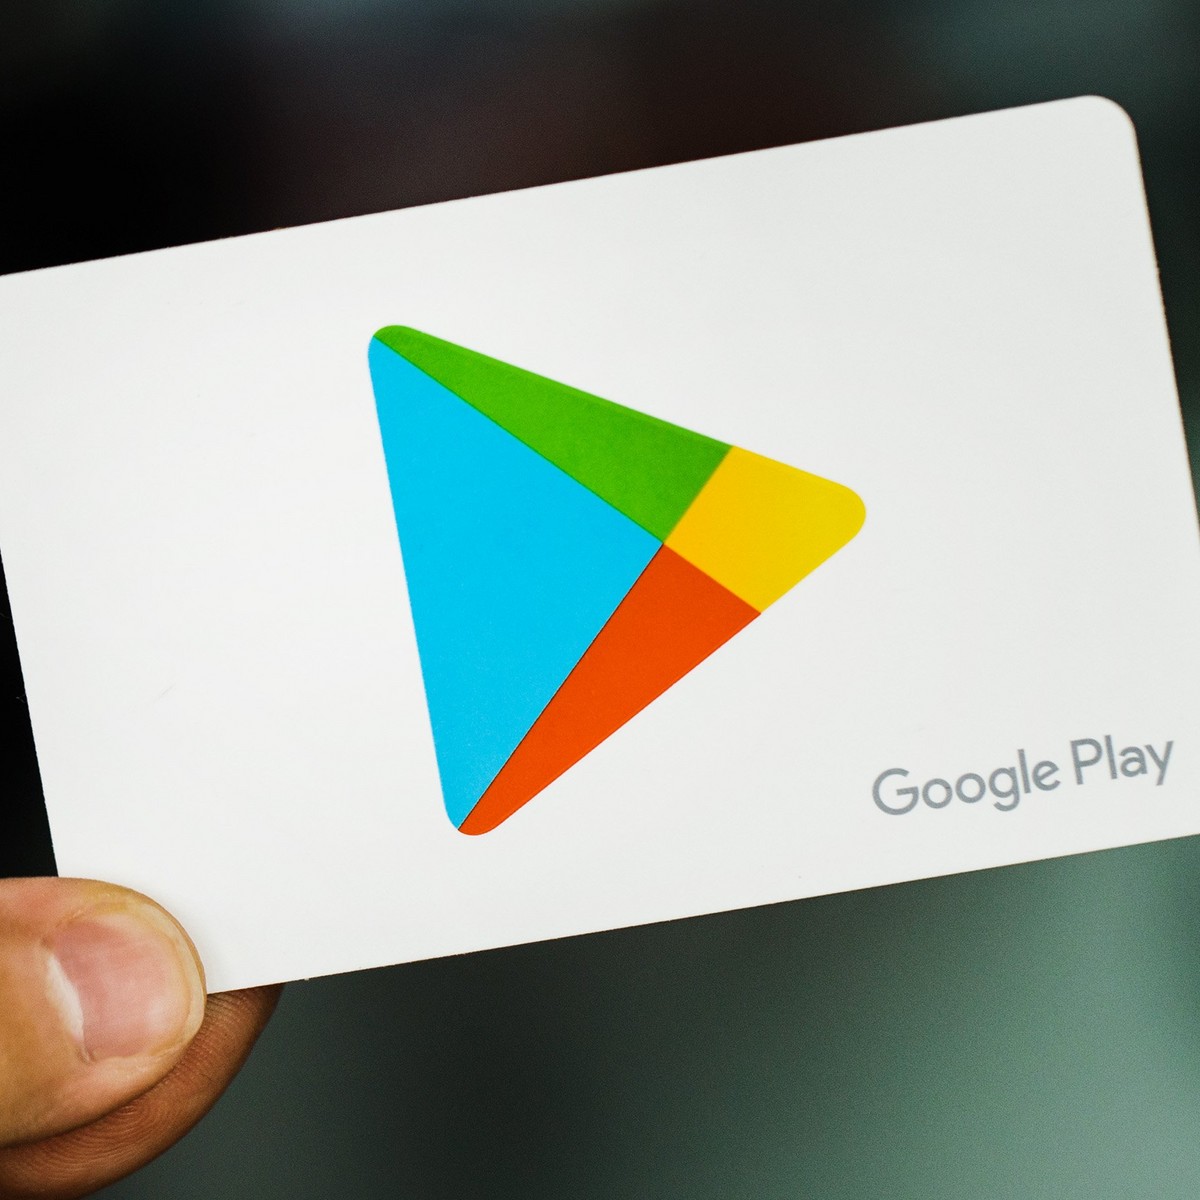 oferece apps e jogos gratuitos para Android na Black Friday